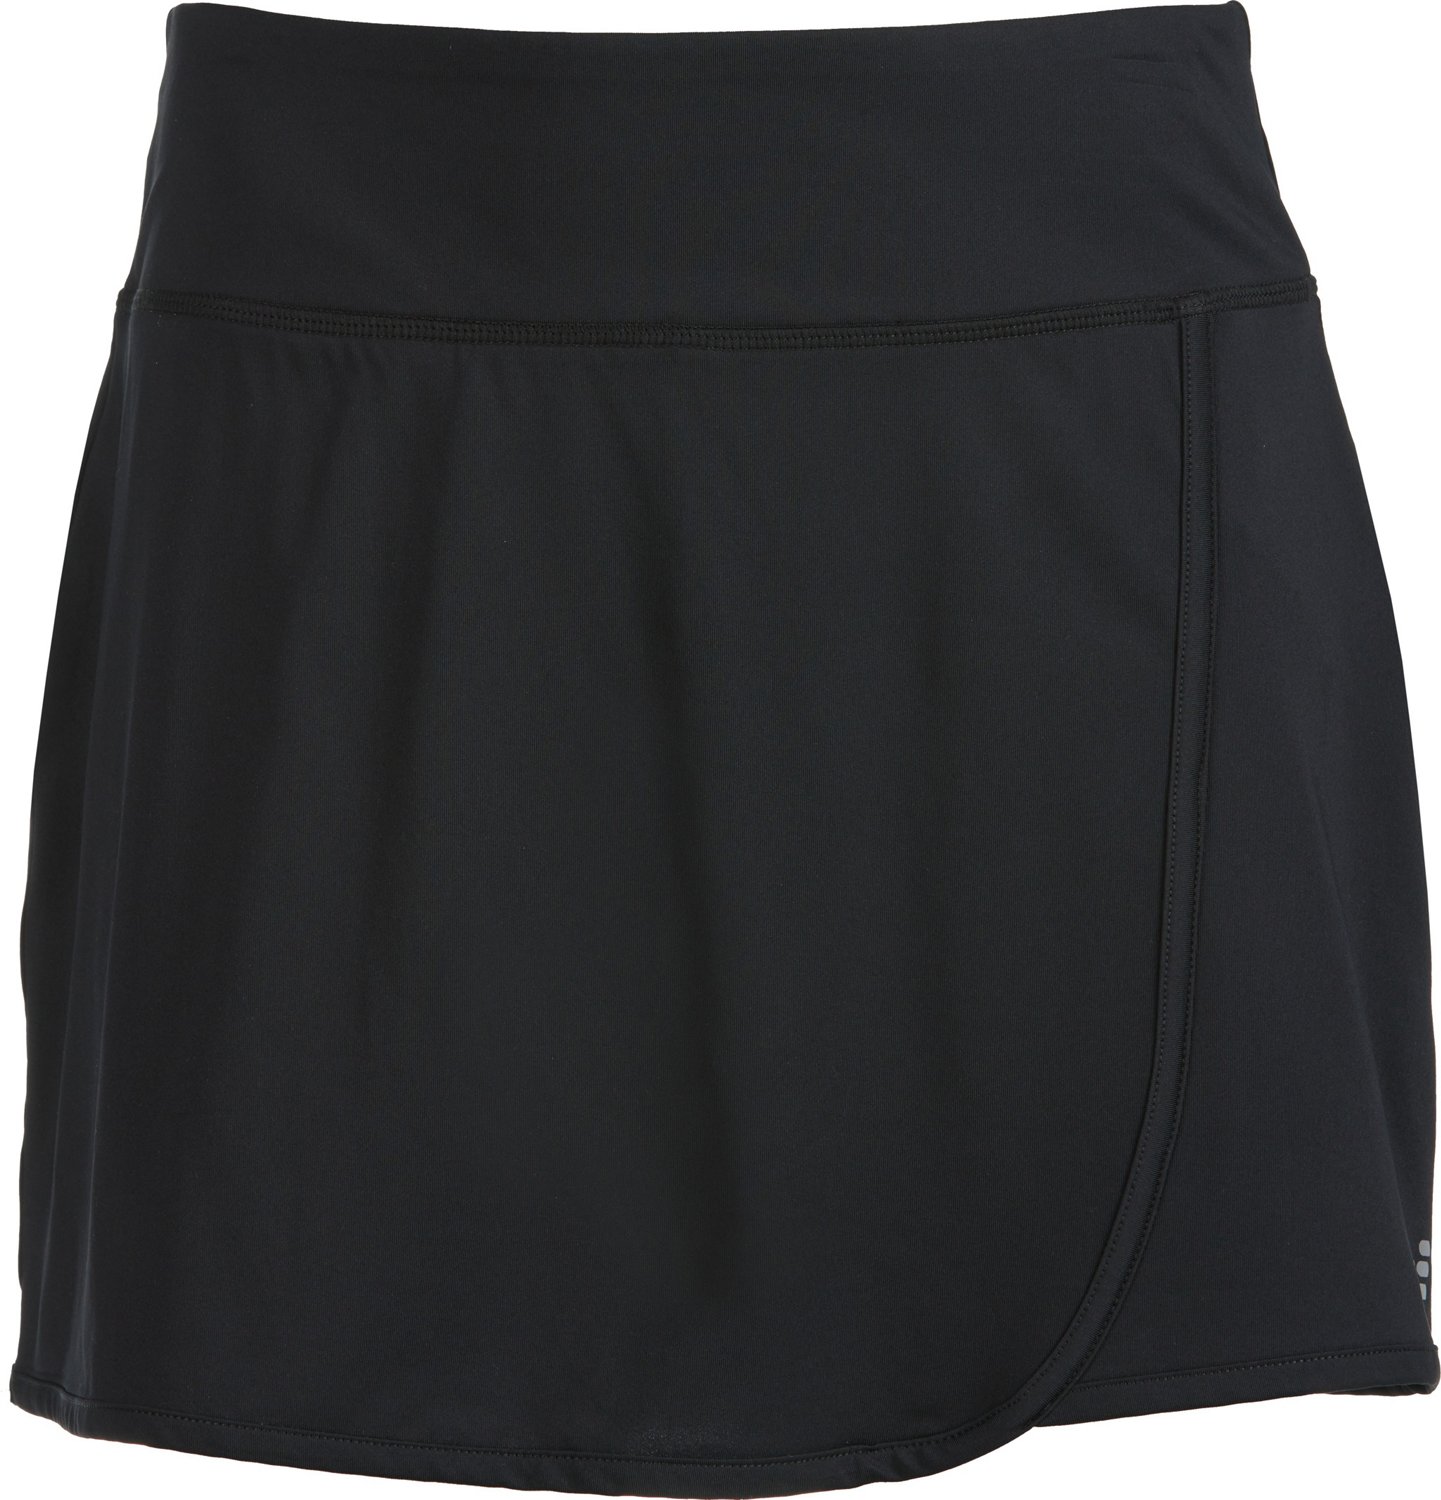 Women's Pleated Back Ultra-Dry Tennis Skirt - Women's Shorts